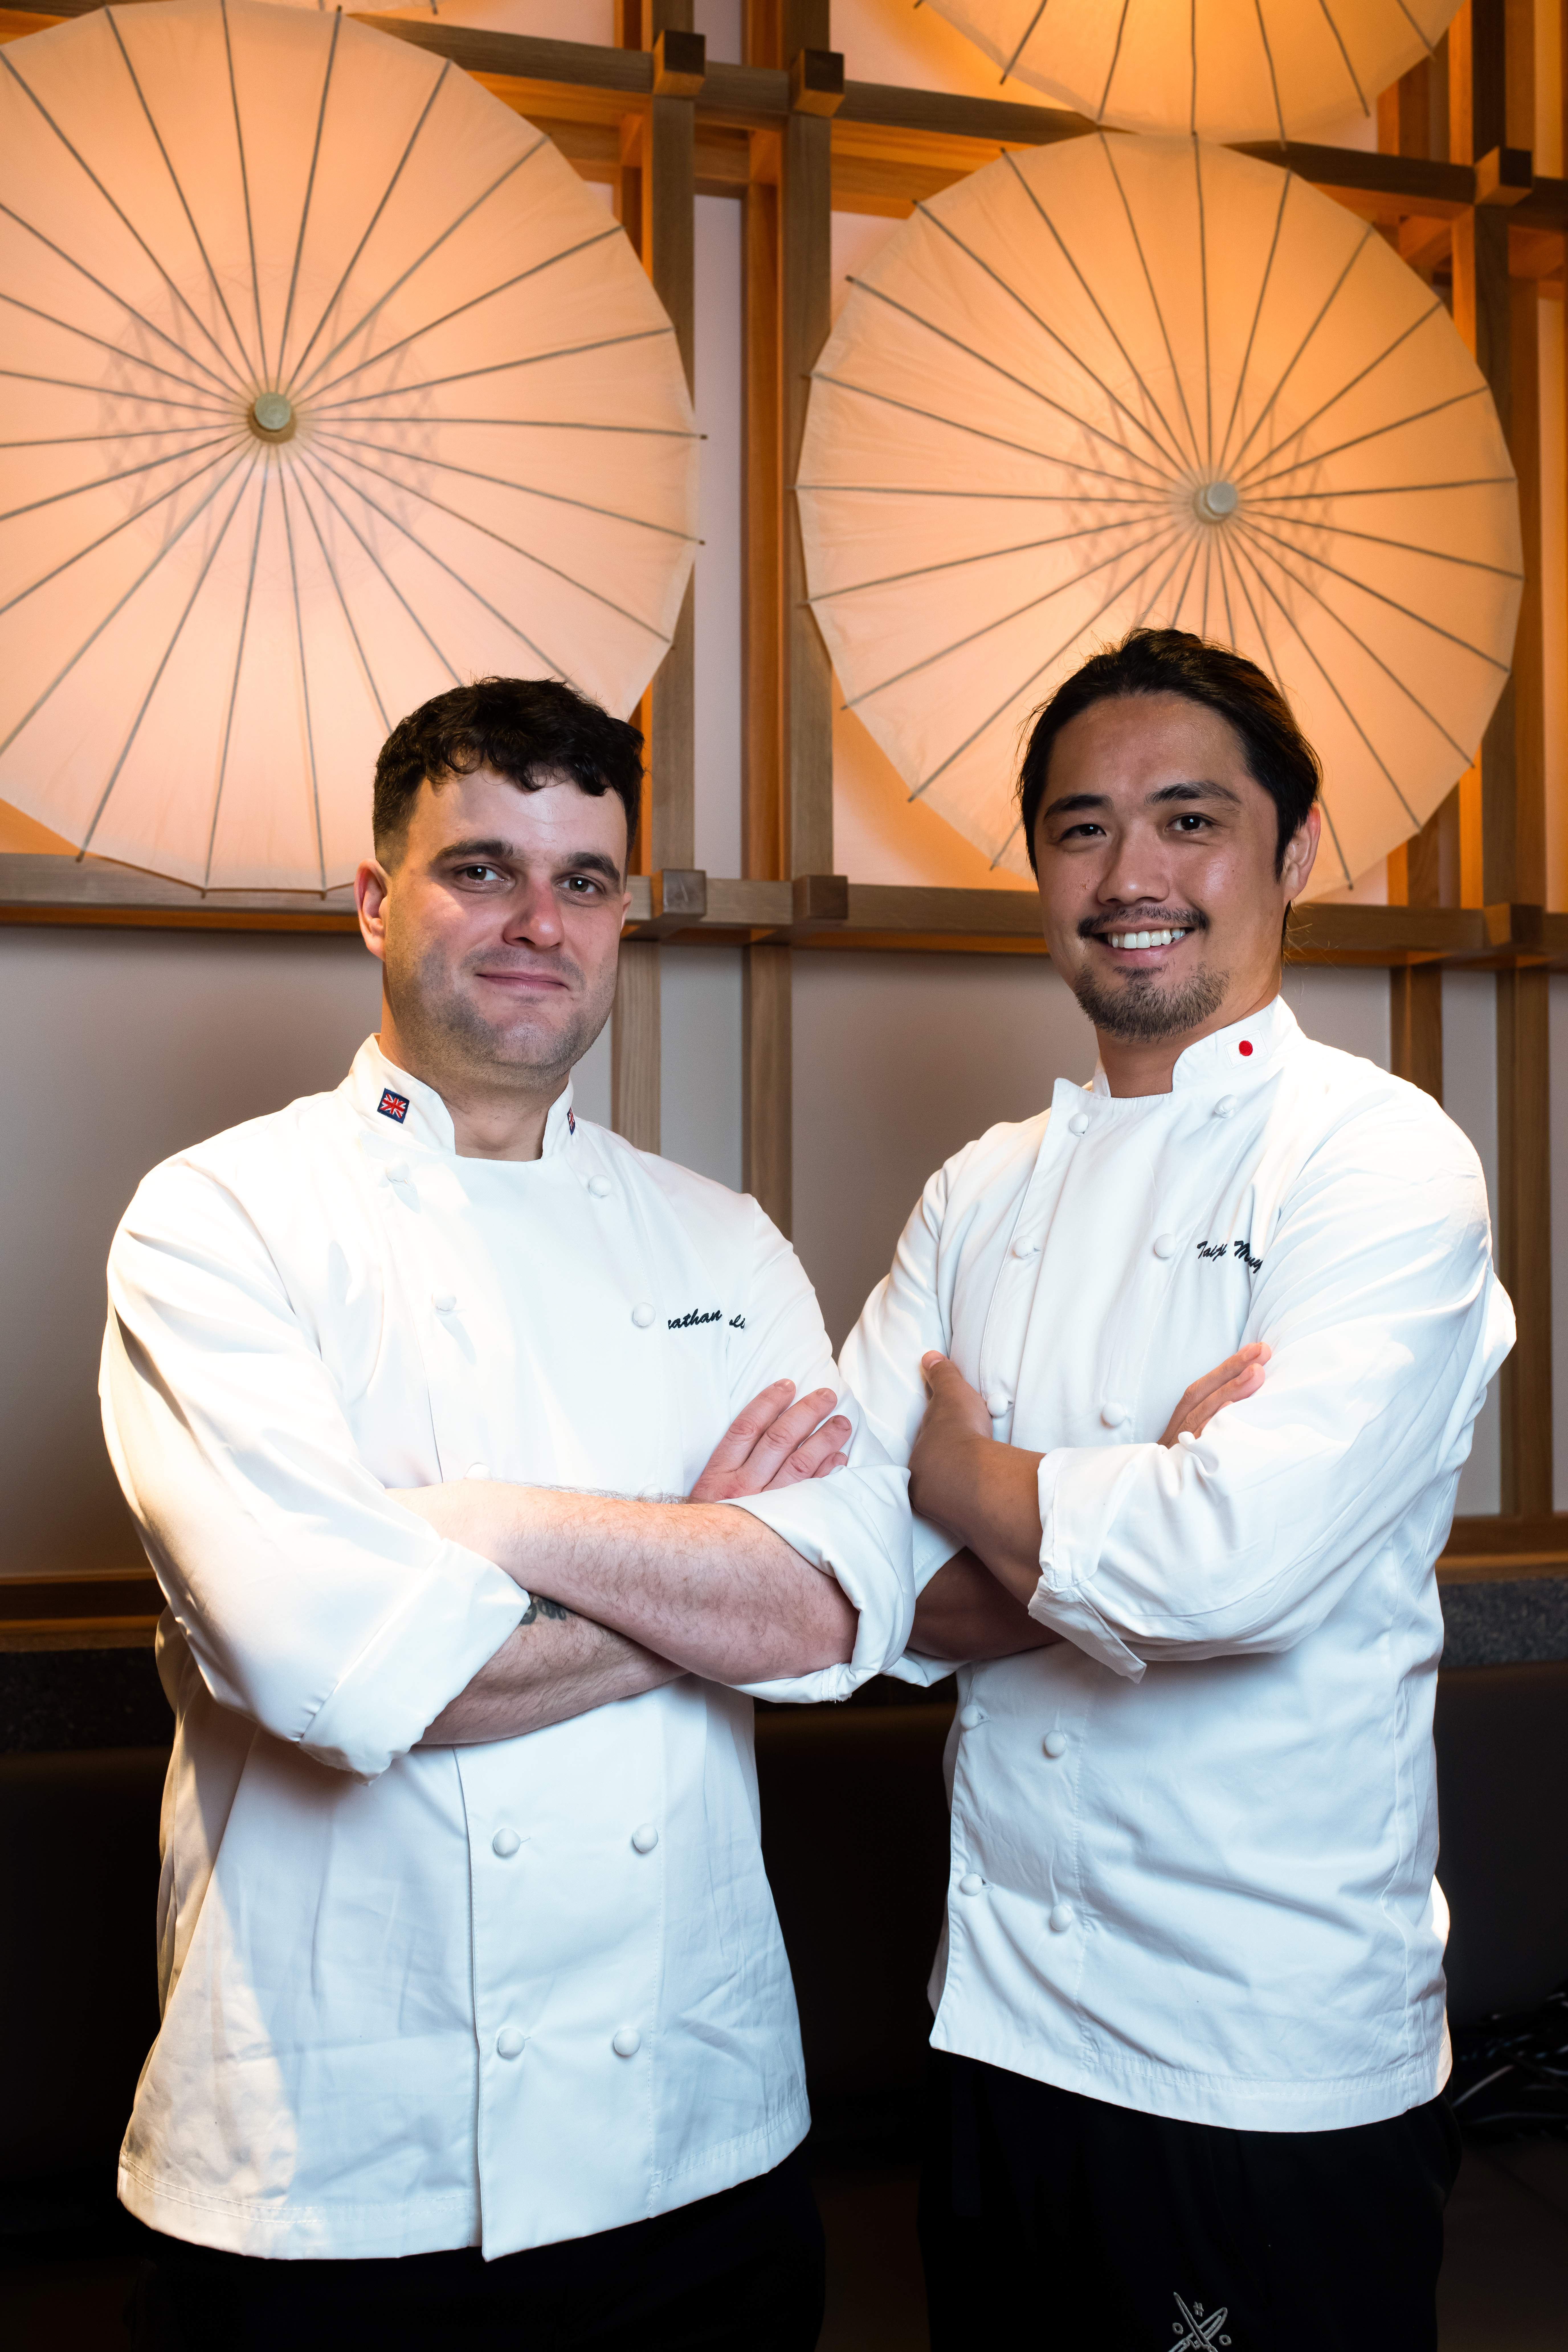 jonathan-head-chef-of-taka-with-taiji-maruyama-executive-chef-of-taka-and-maru-137_edit.jpg